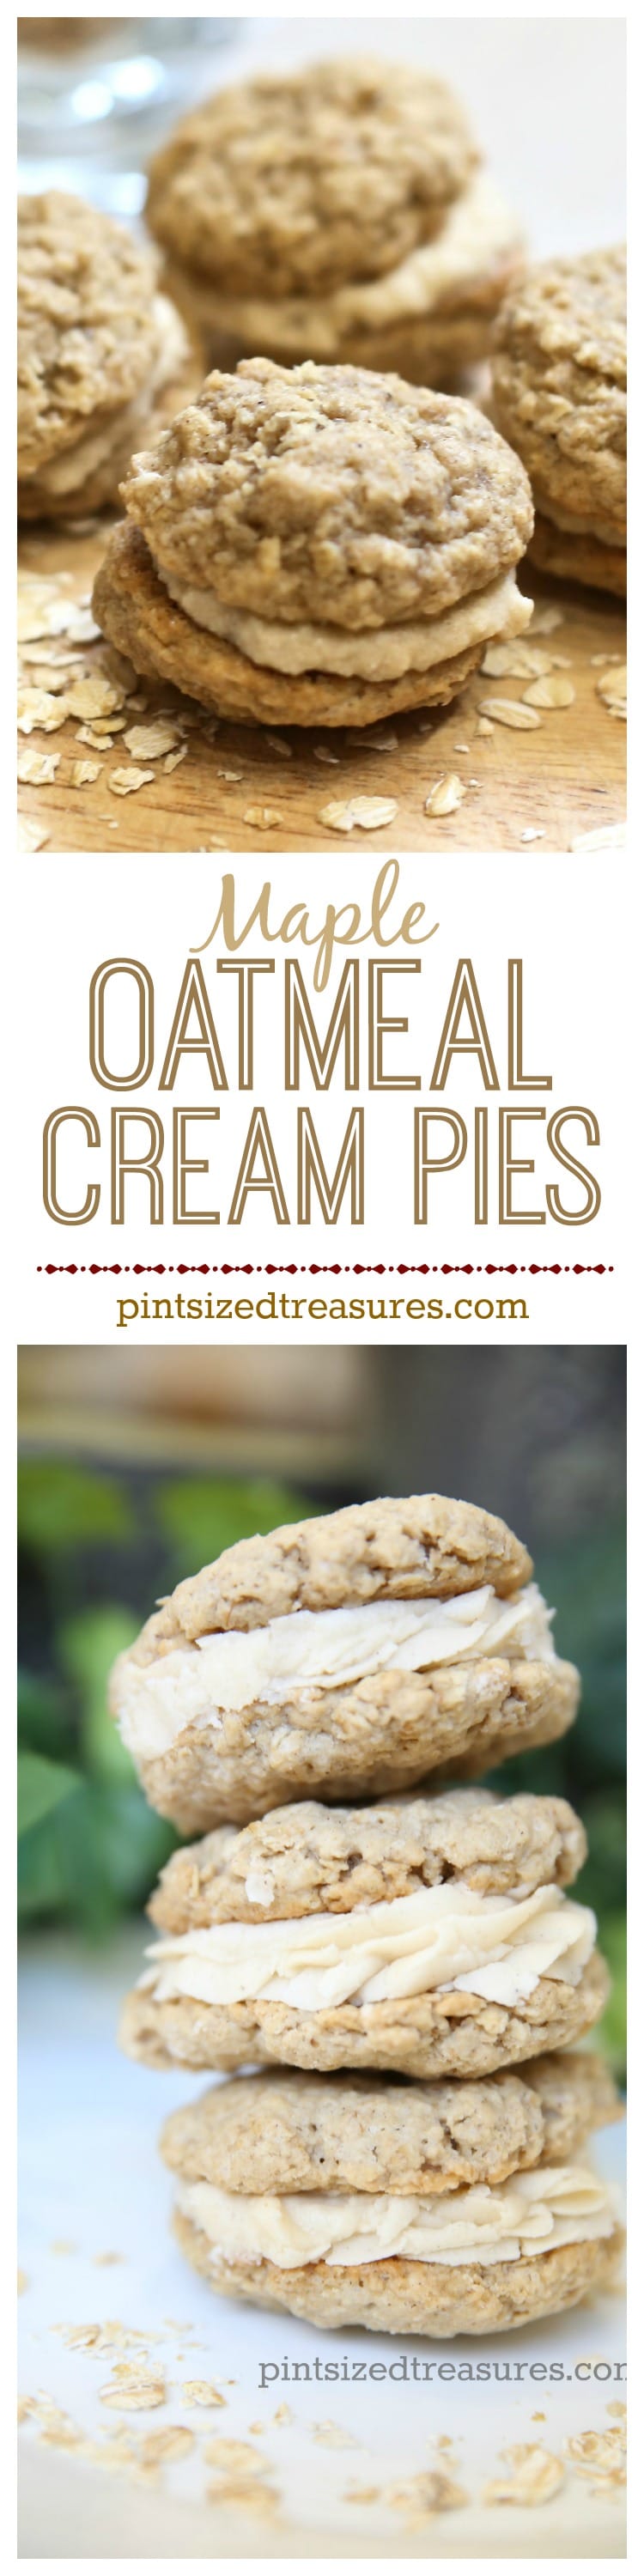 homemade oatmeal cream pies